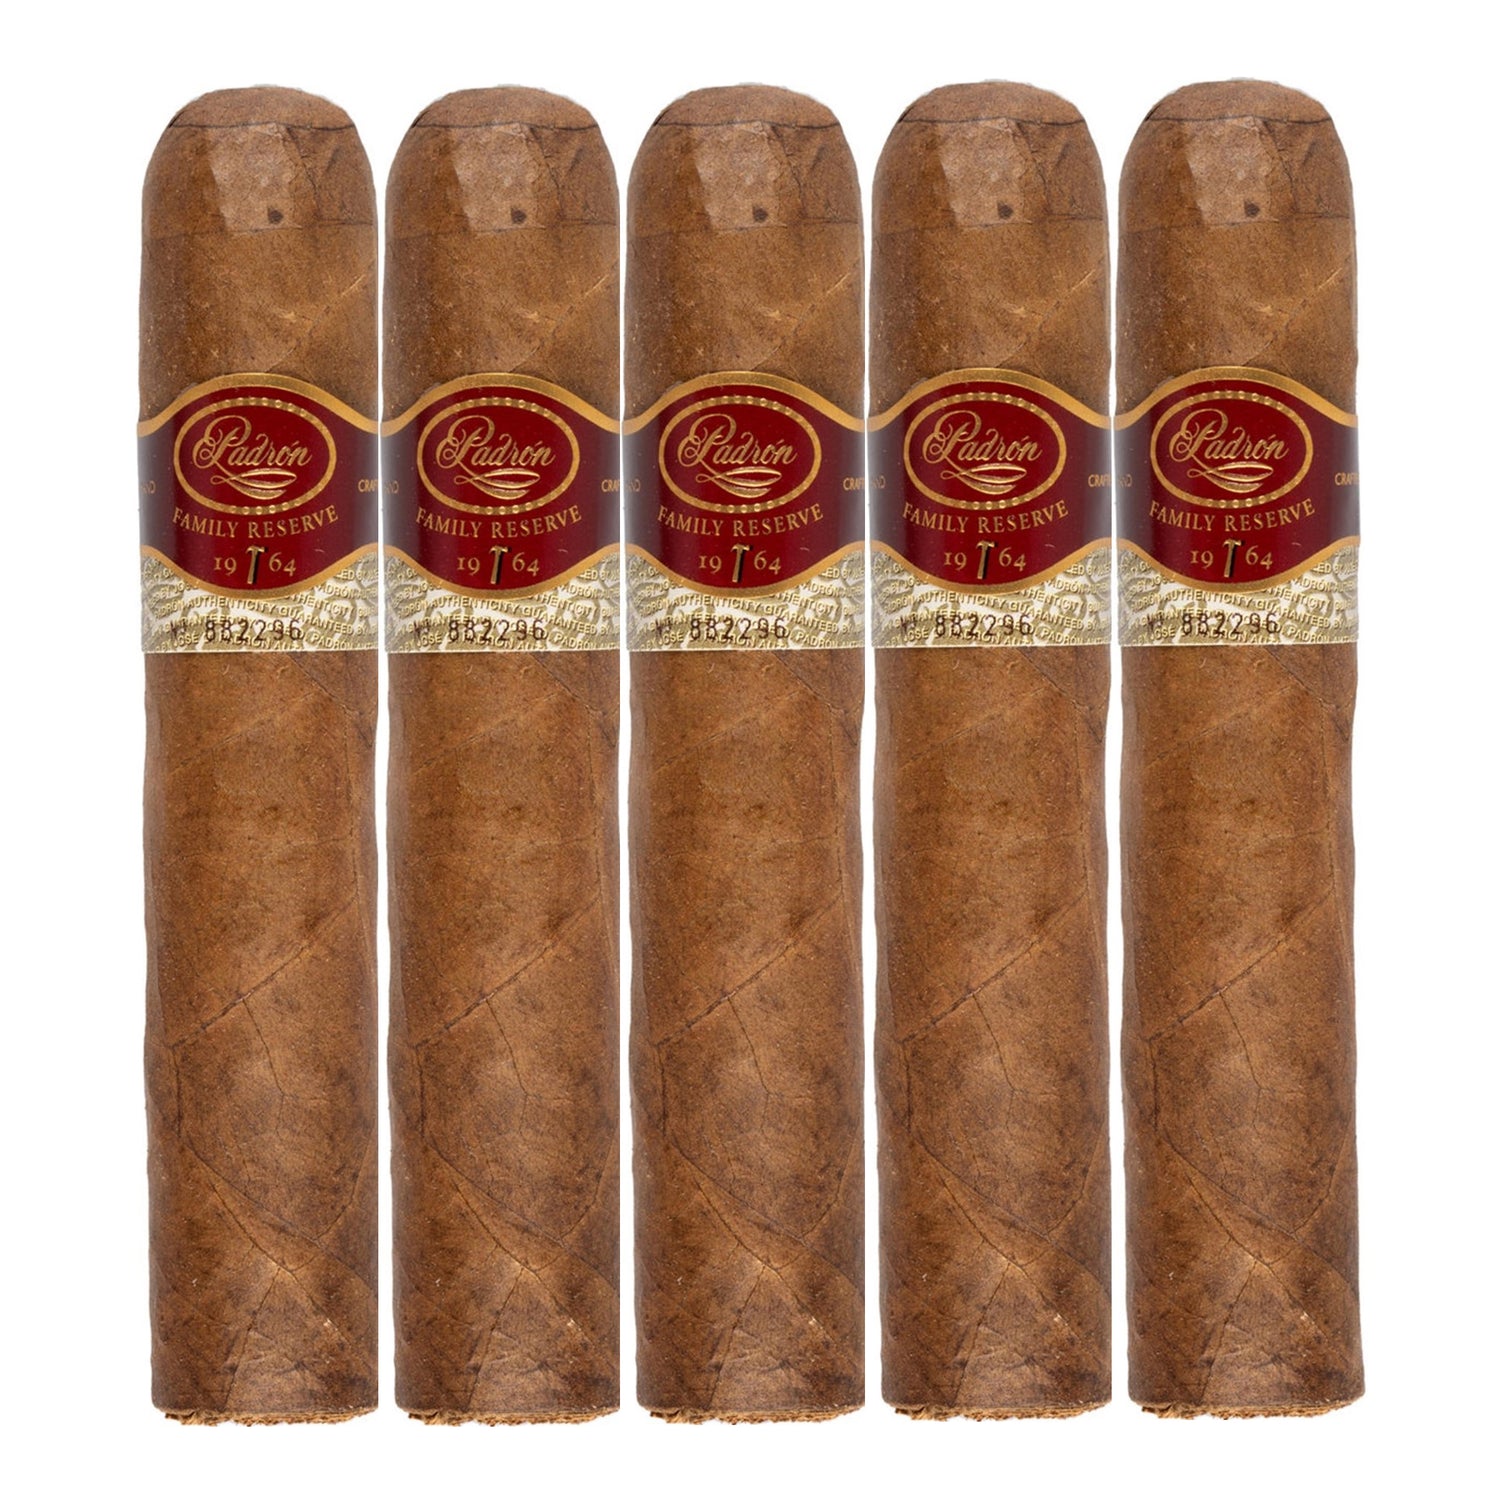 Padron Family Reserve No. 95 Natural Cigars